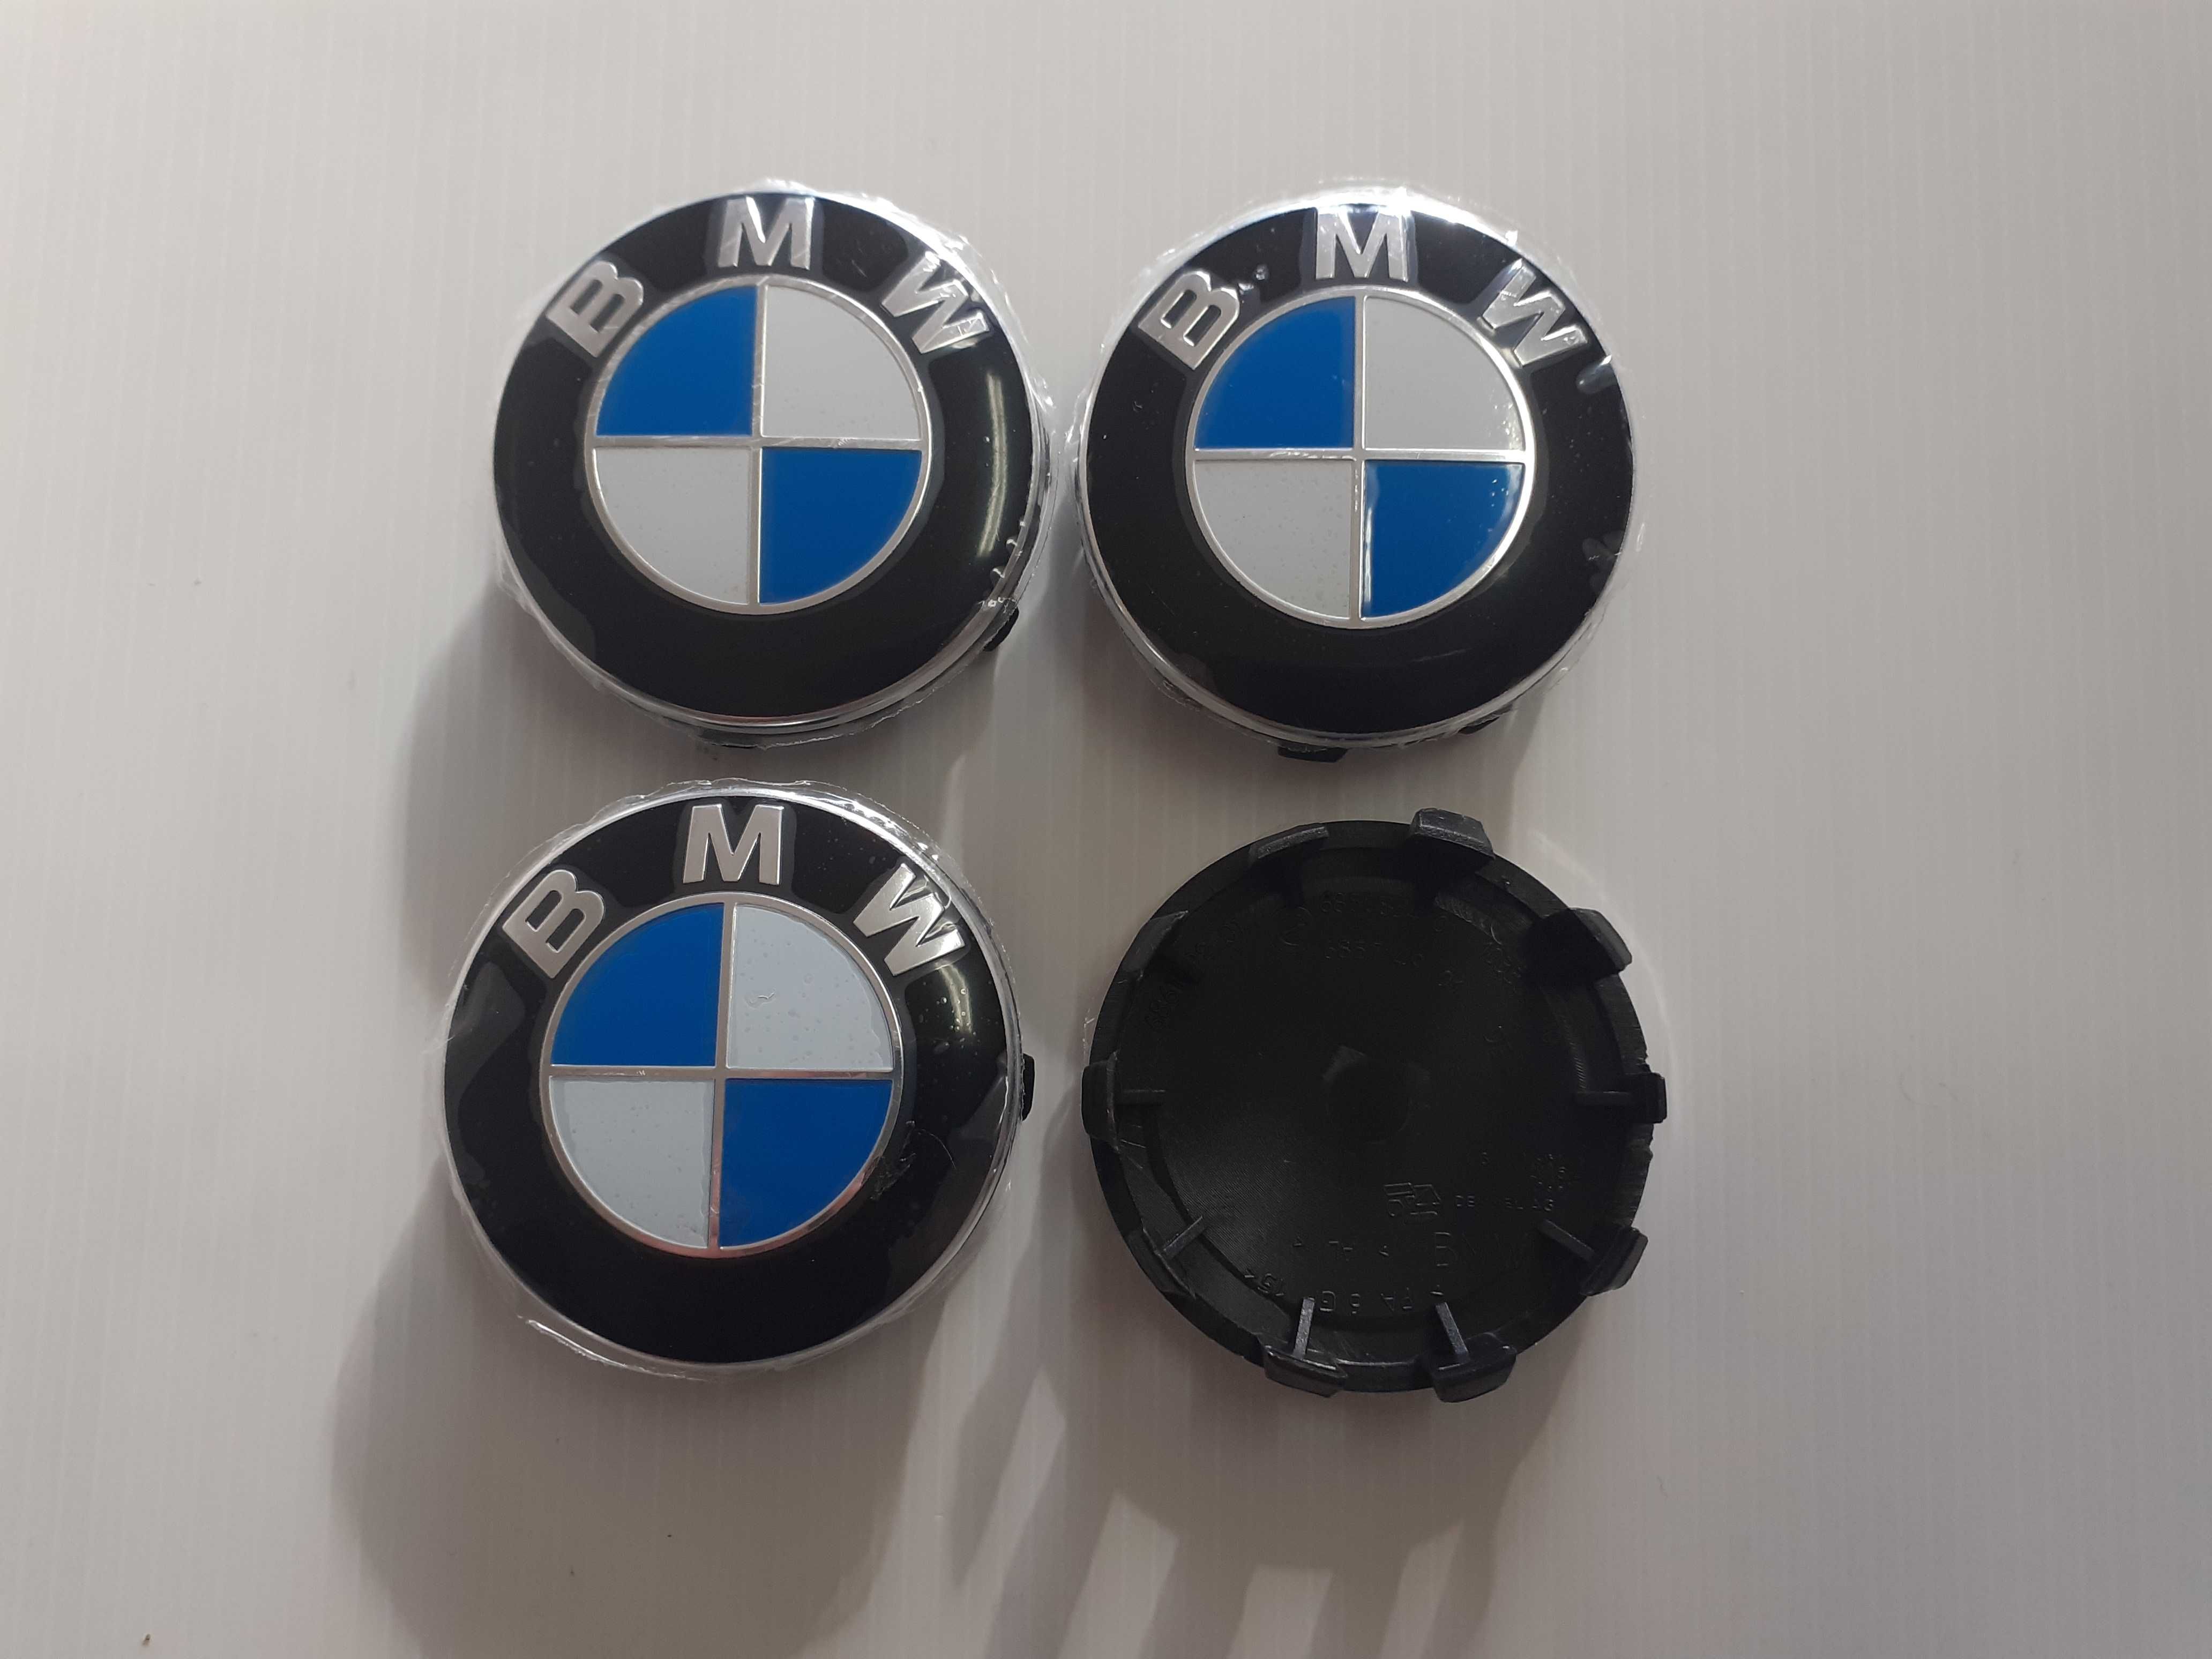 Centros/tampas de jante completos BMW com 56, 60, 65 e 68 mm